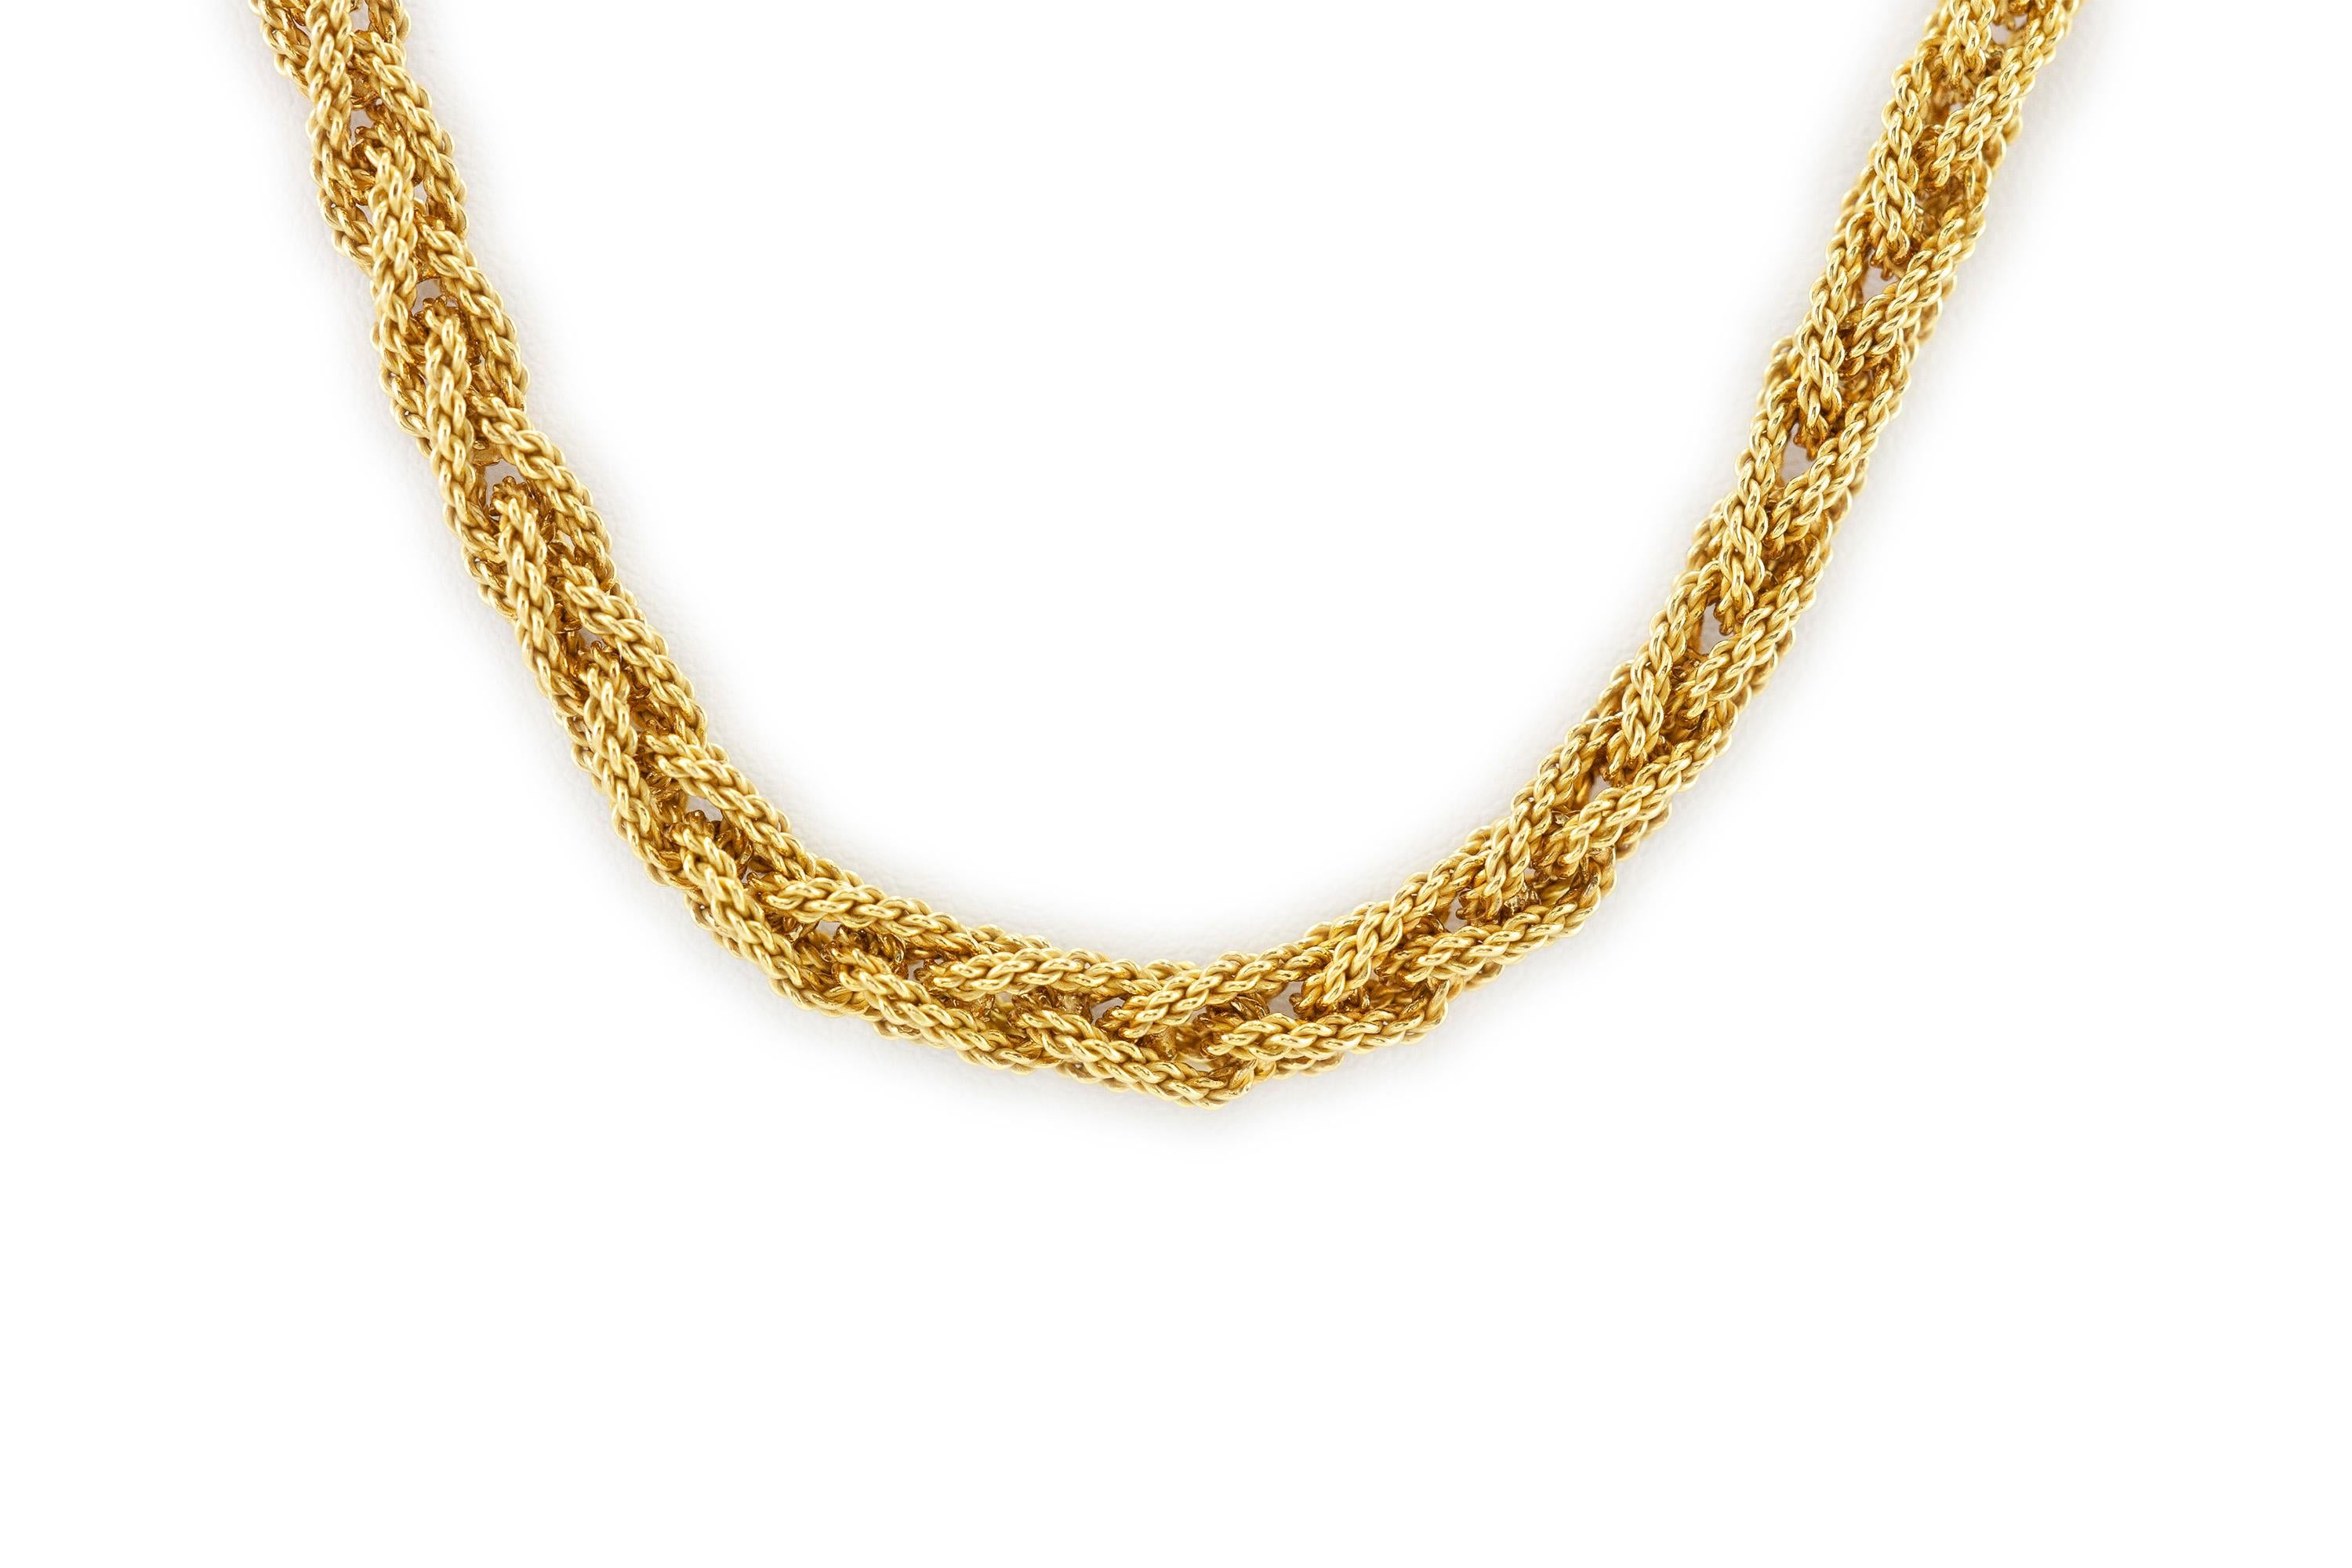 Ce magnifique collier est finement ouvragé en or 18 carats.
Il pèse environ 121,3 grammes au total et mesure 36 pouces de long.
Circa 1960.